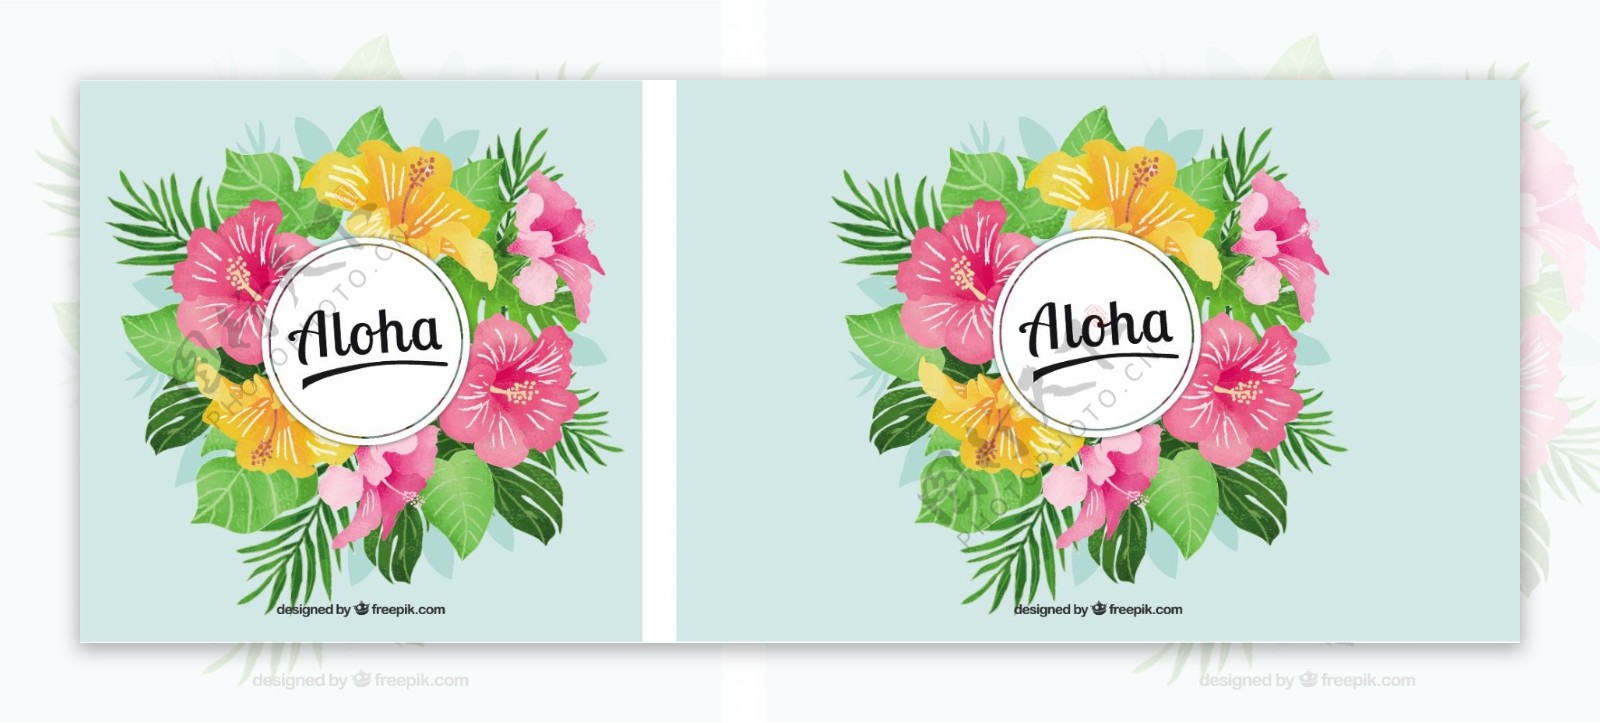 ALOHA背景用鲜花和水彩的叶子